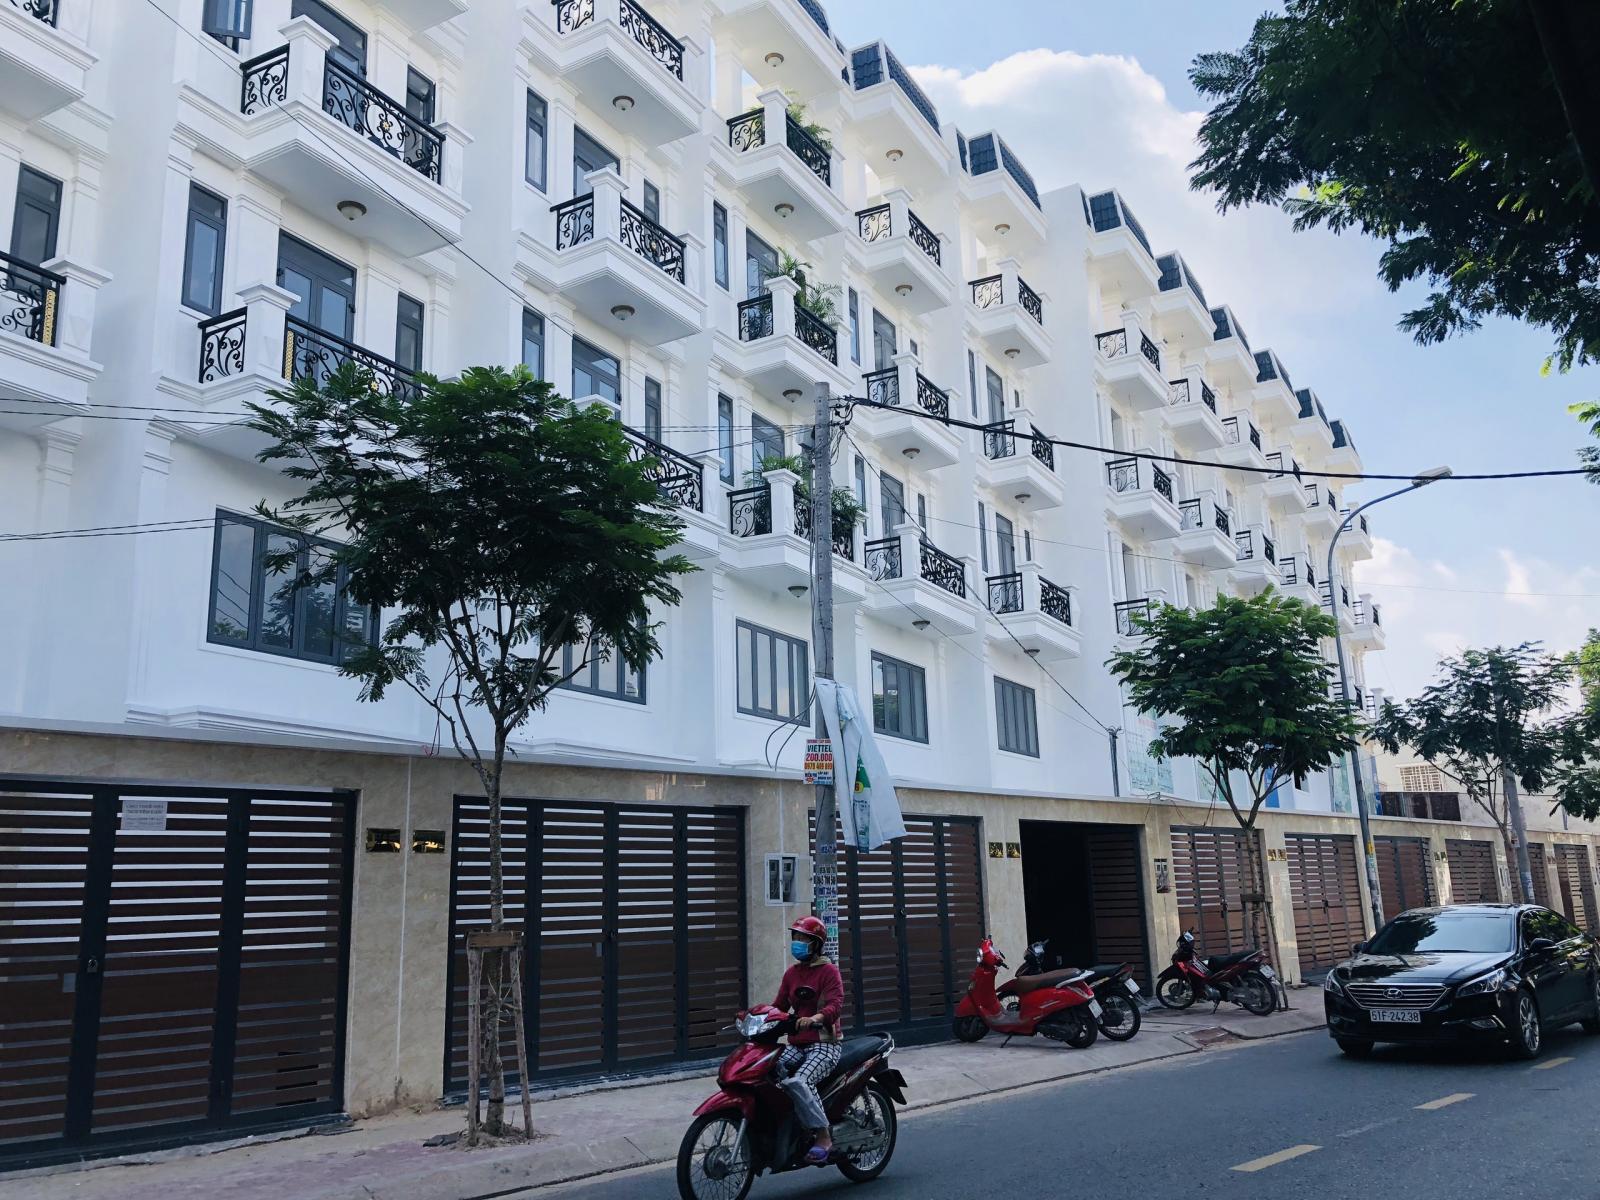 Bán nhà phố mặt tiền kế bên trục đường chính Lê thị Riêng và Lê Văn Khương. Lhệ 0907.228.829